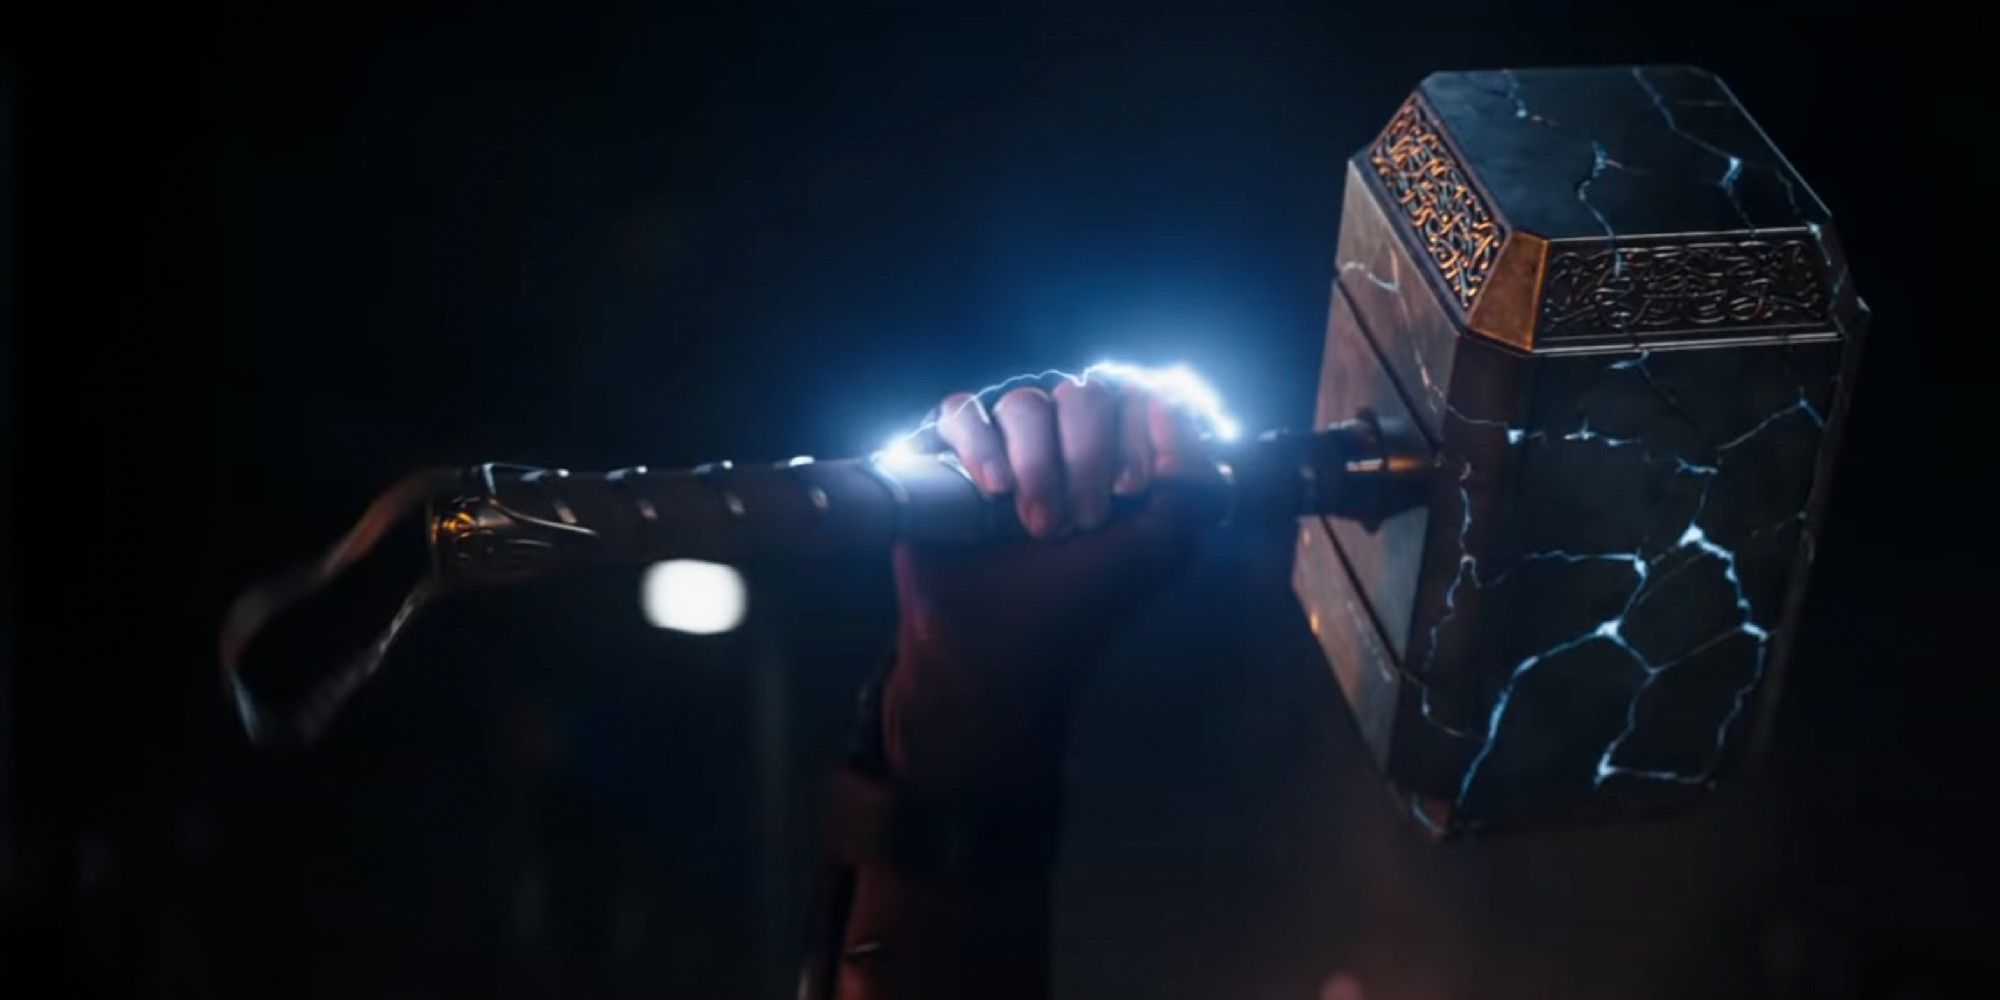 Exclusivo - Thor: Love & Thunder: Trailer mostra18 revelações e segredos da história 16